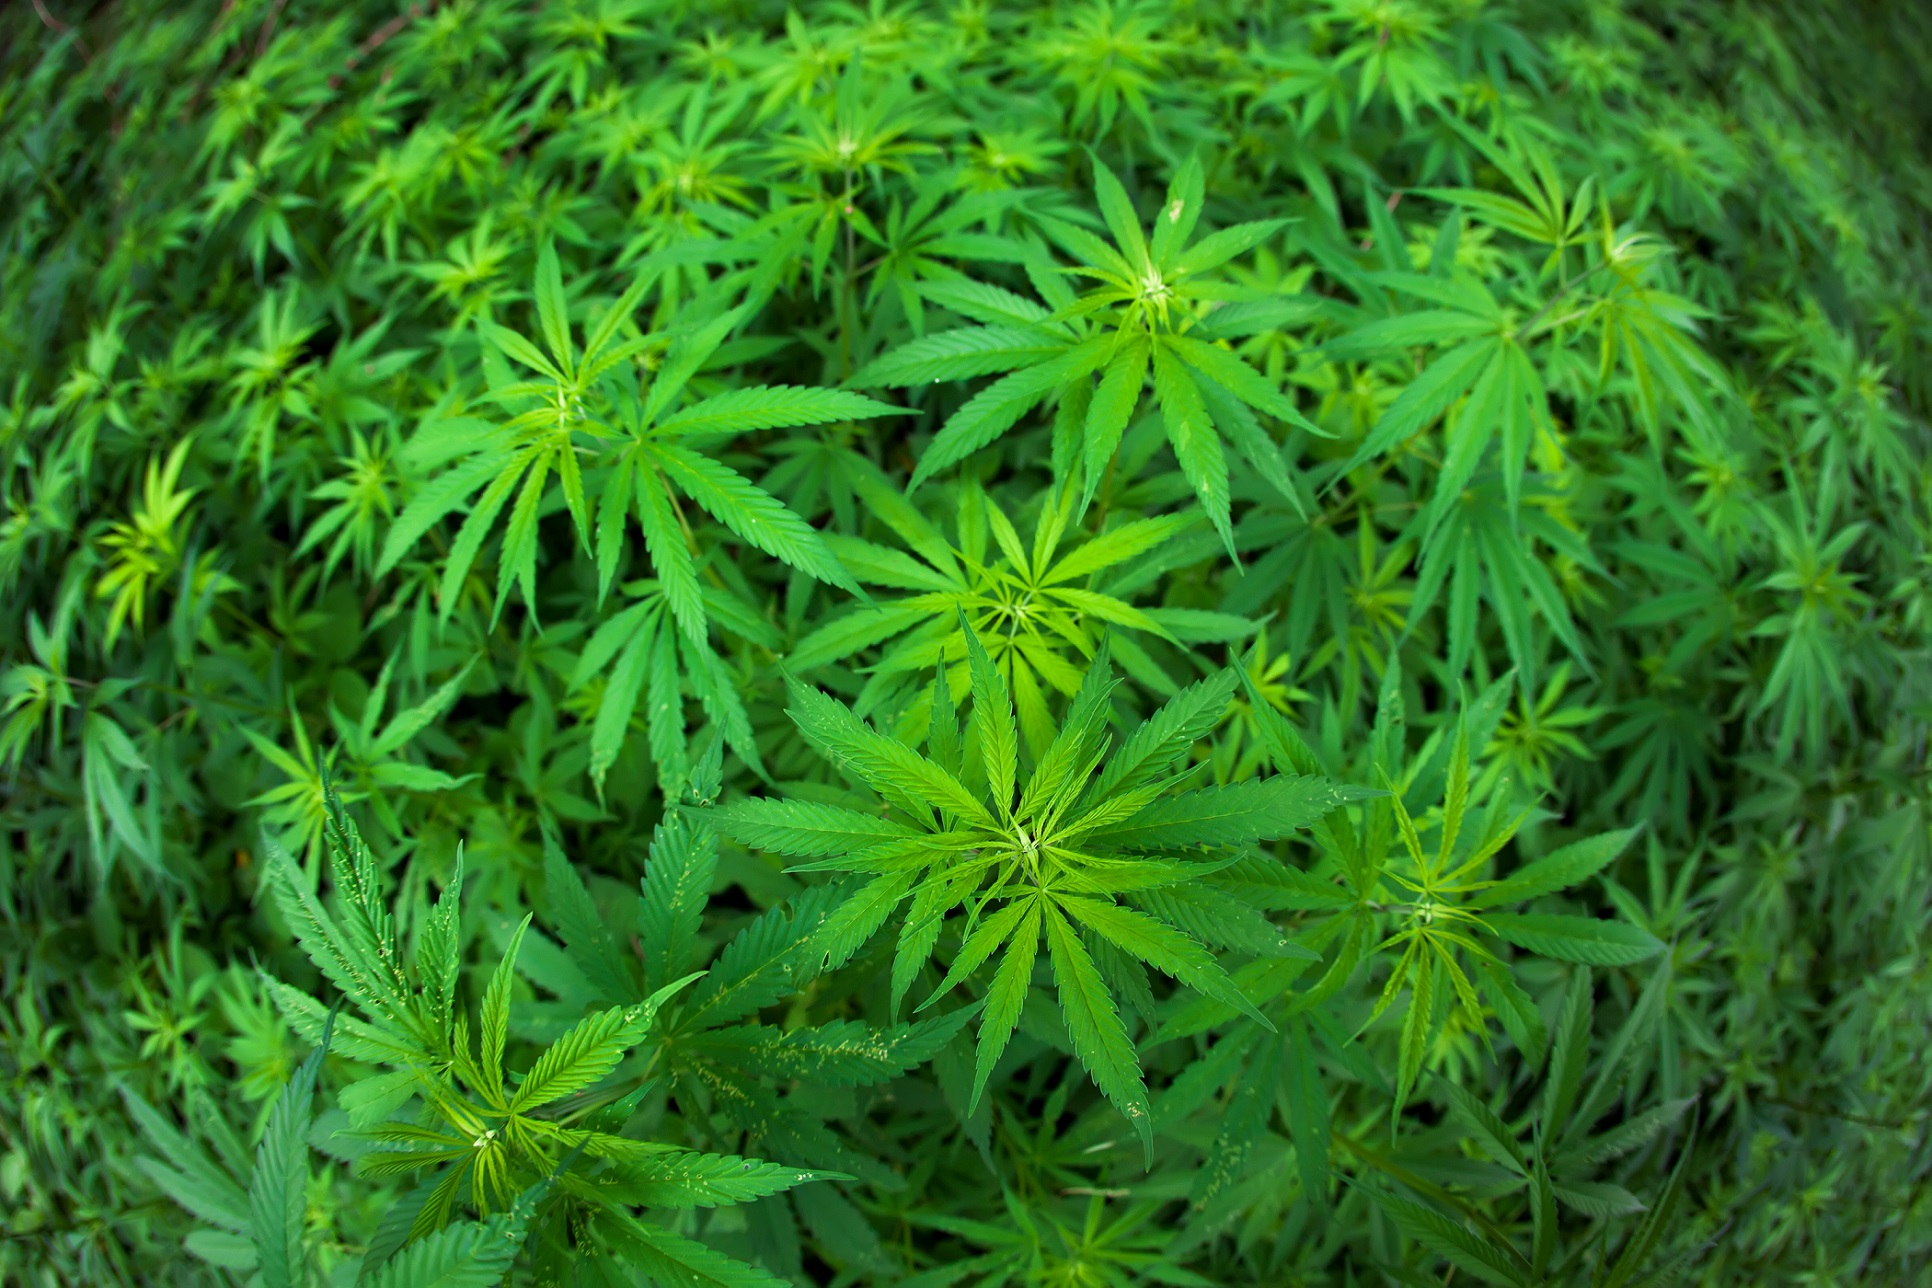 Le cannabis est la drogue illégale la plus consommée en France. © Anton Jankovoy, Shutterstock